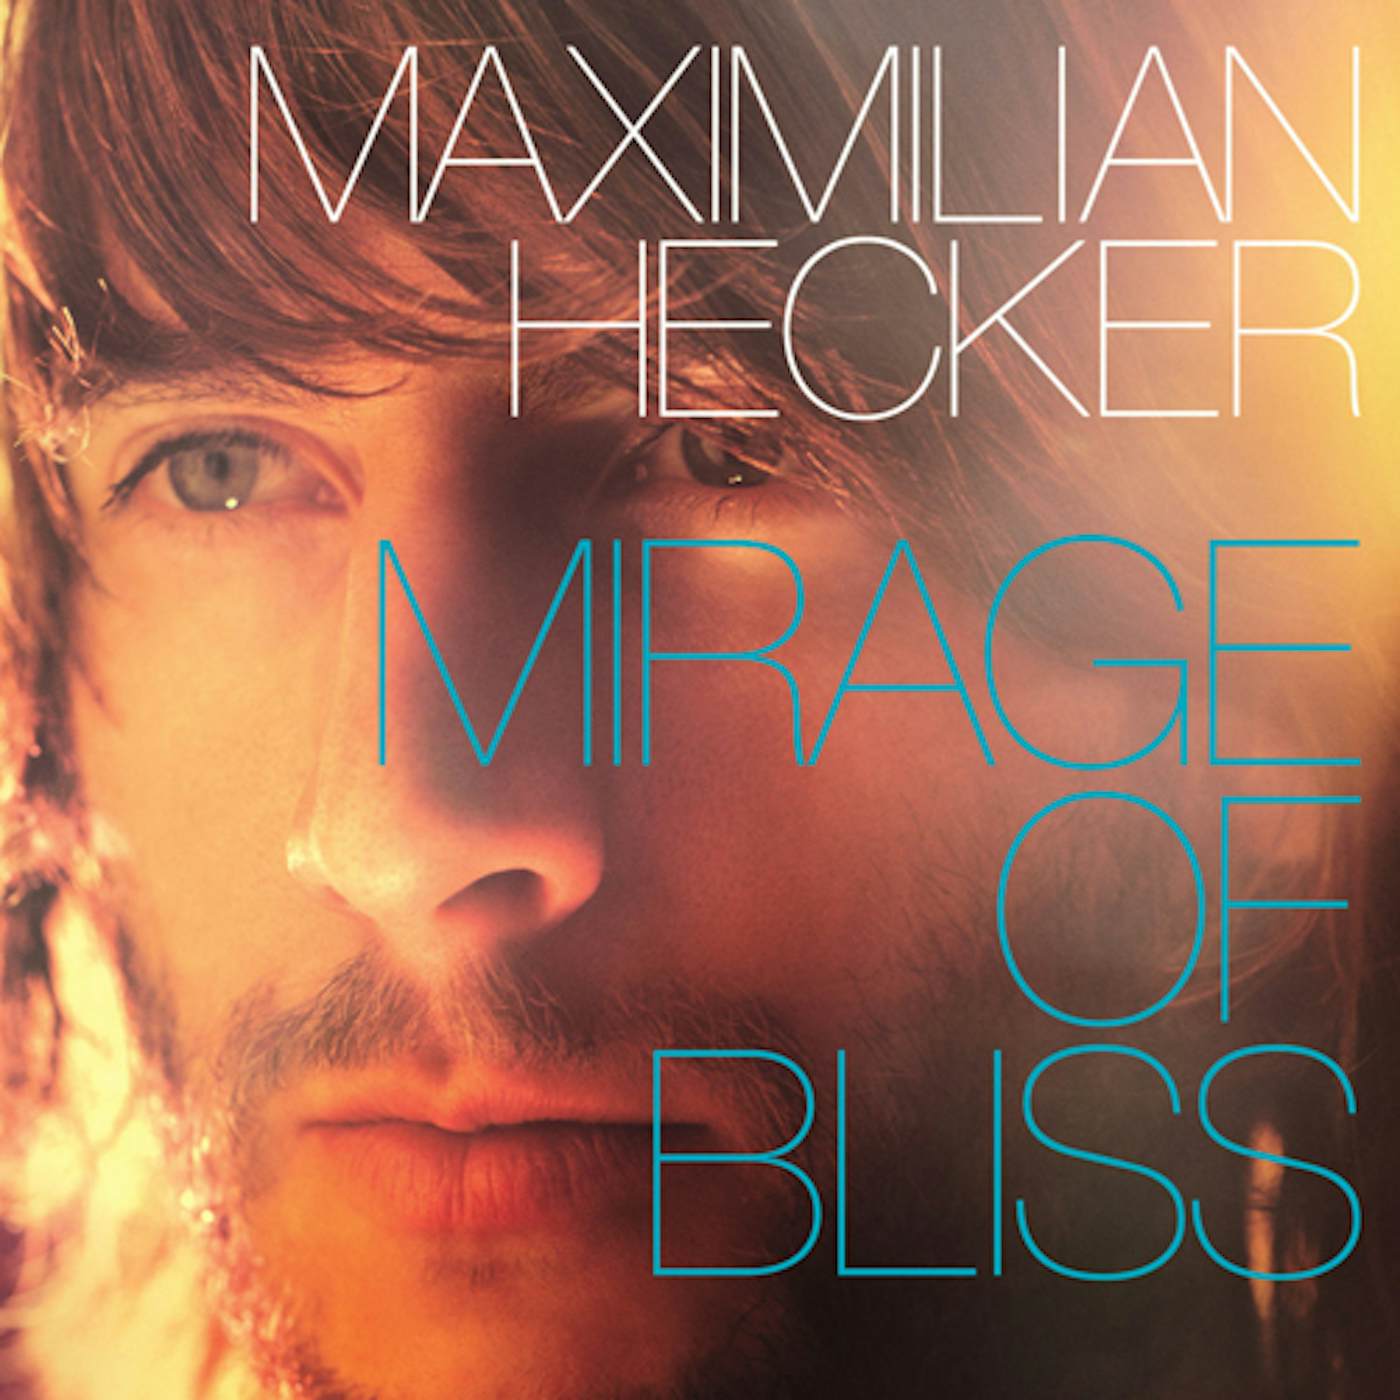 Maximilian Hecker MIRAGE OF BLISS CD